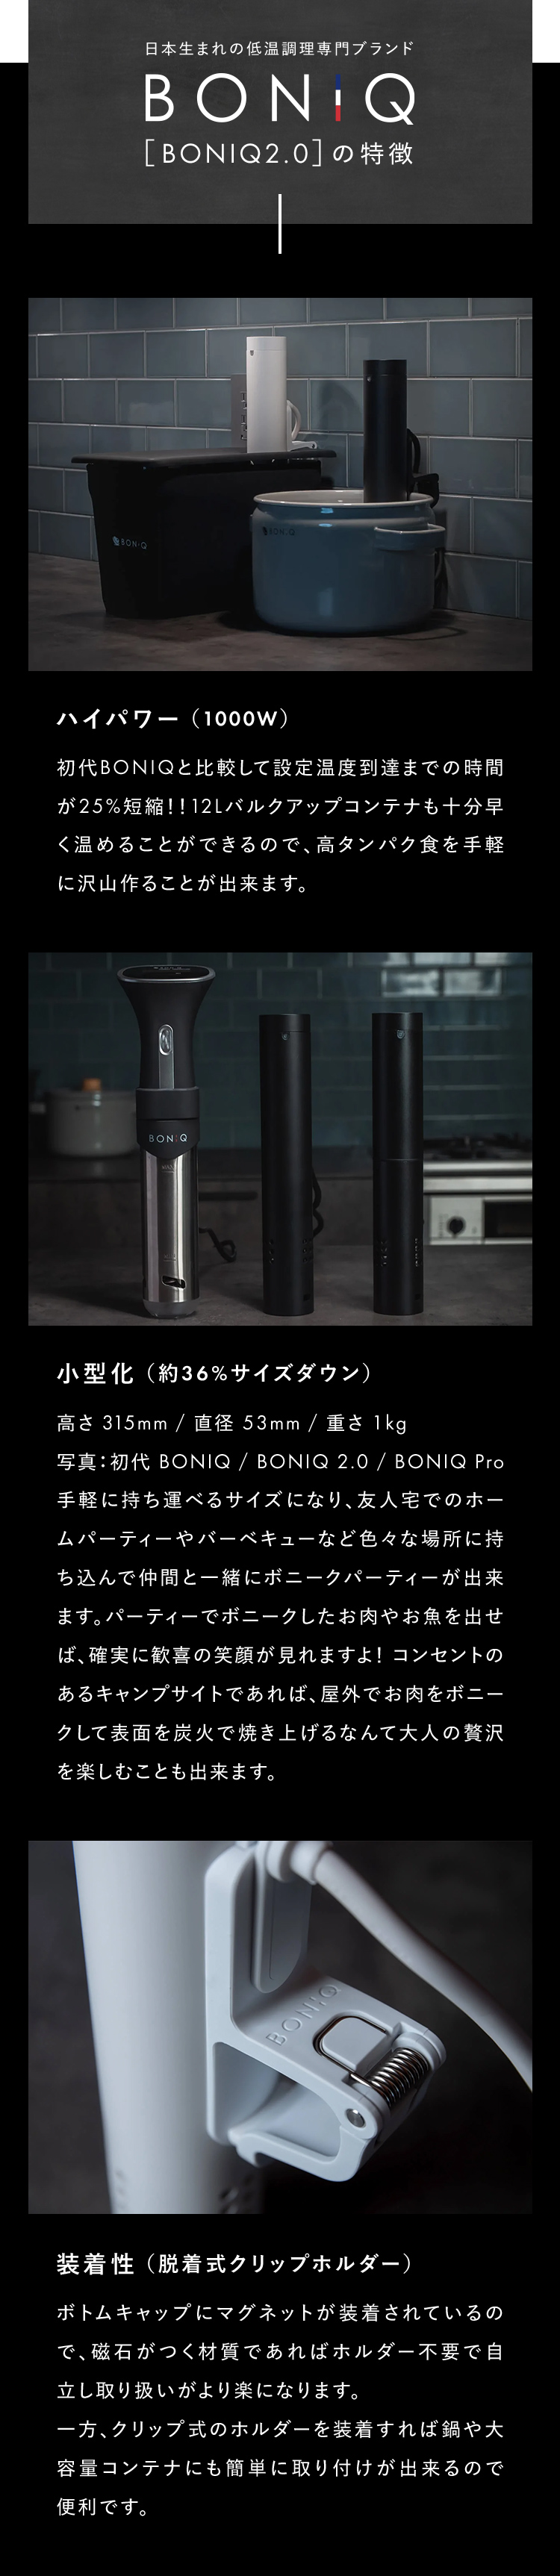 正規販売店 メーカー保証対応付き】BONIQ 2.0 ボニーク 低温調理器 BNQ 